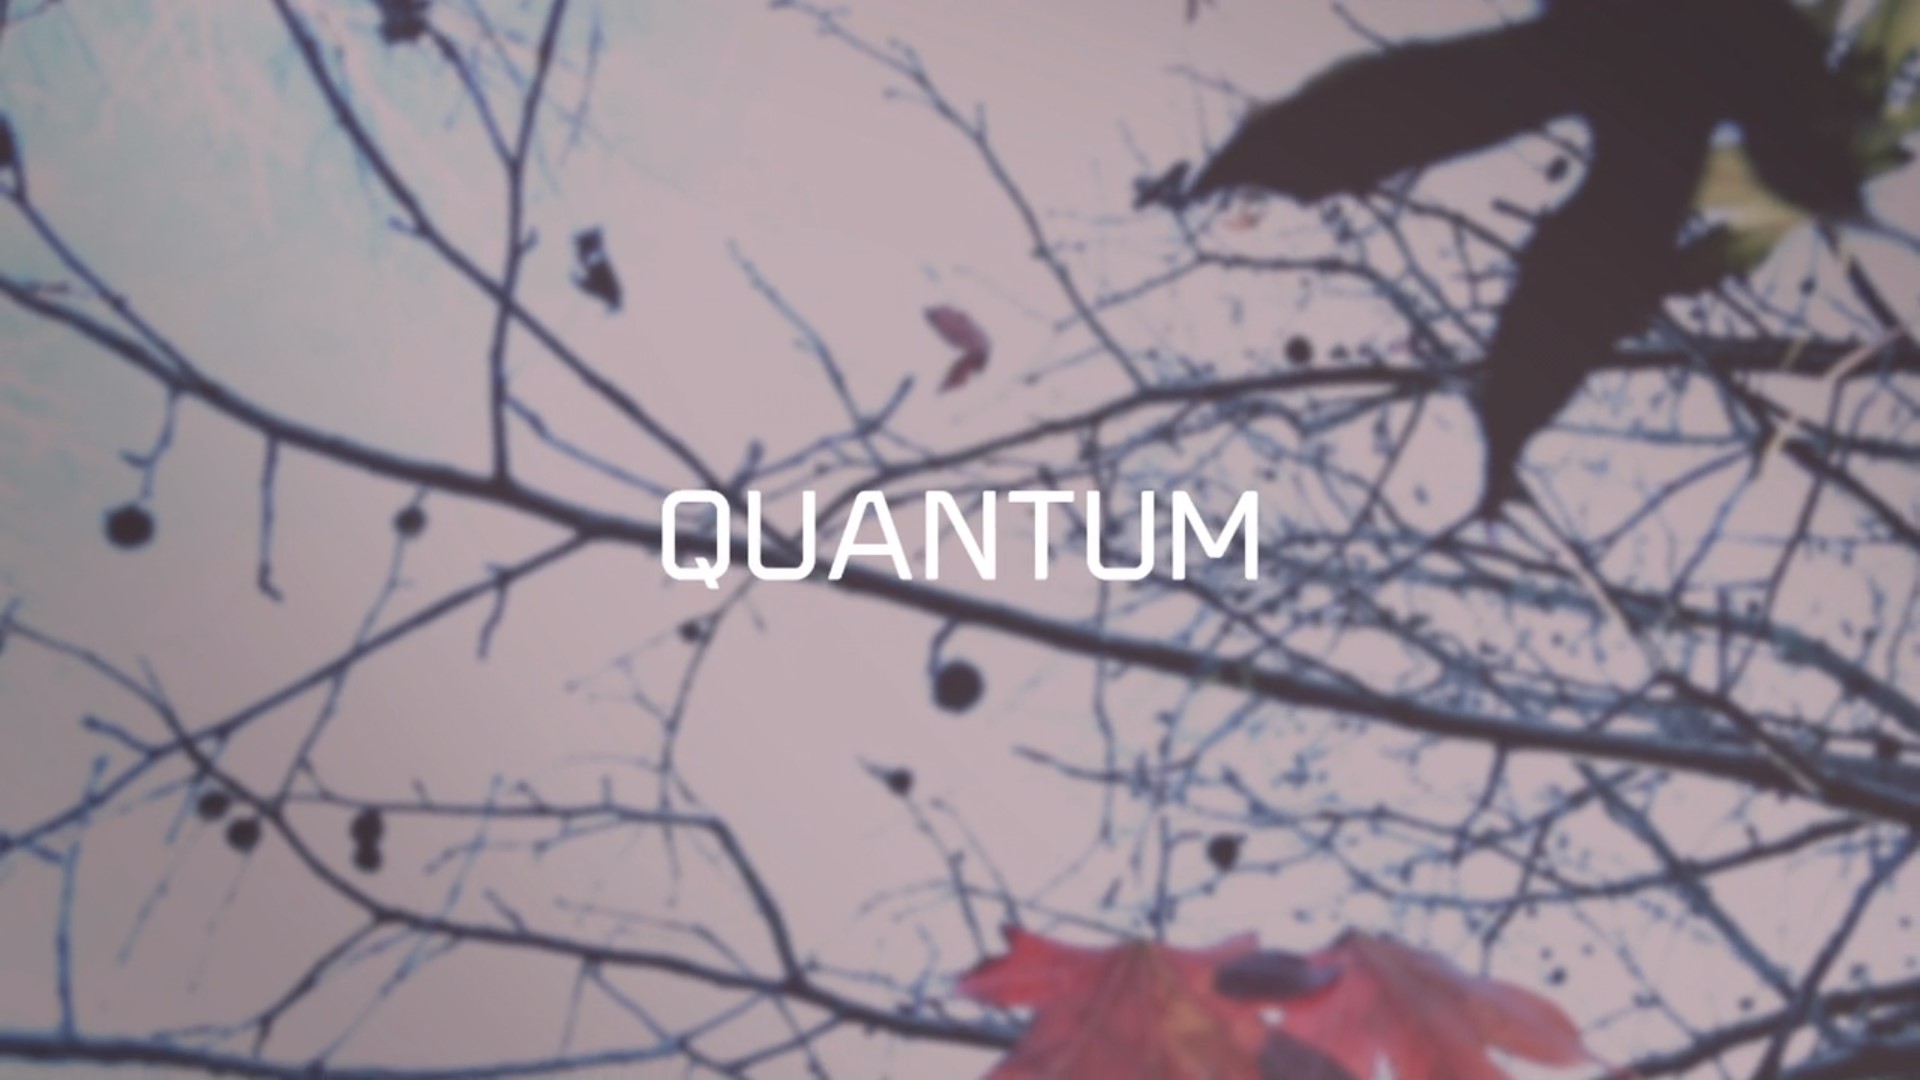 DELLANNO - Quantum